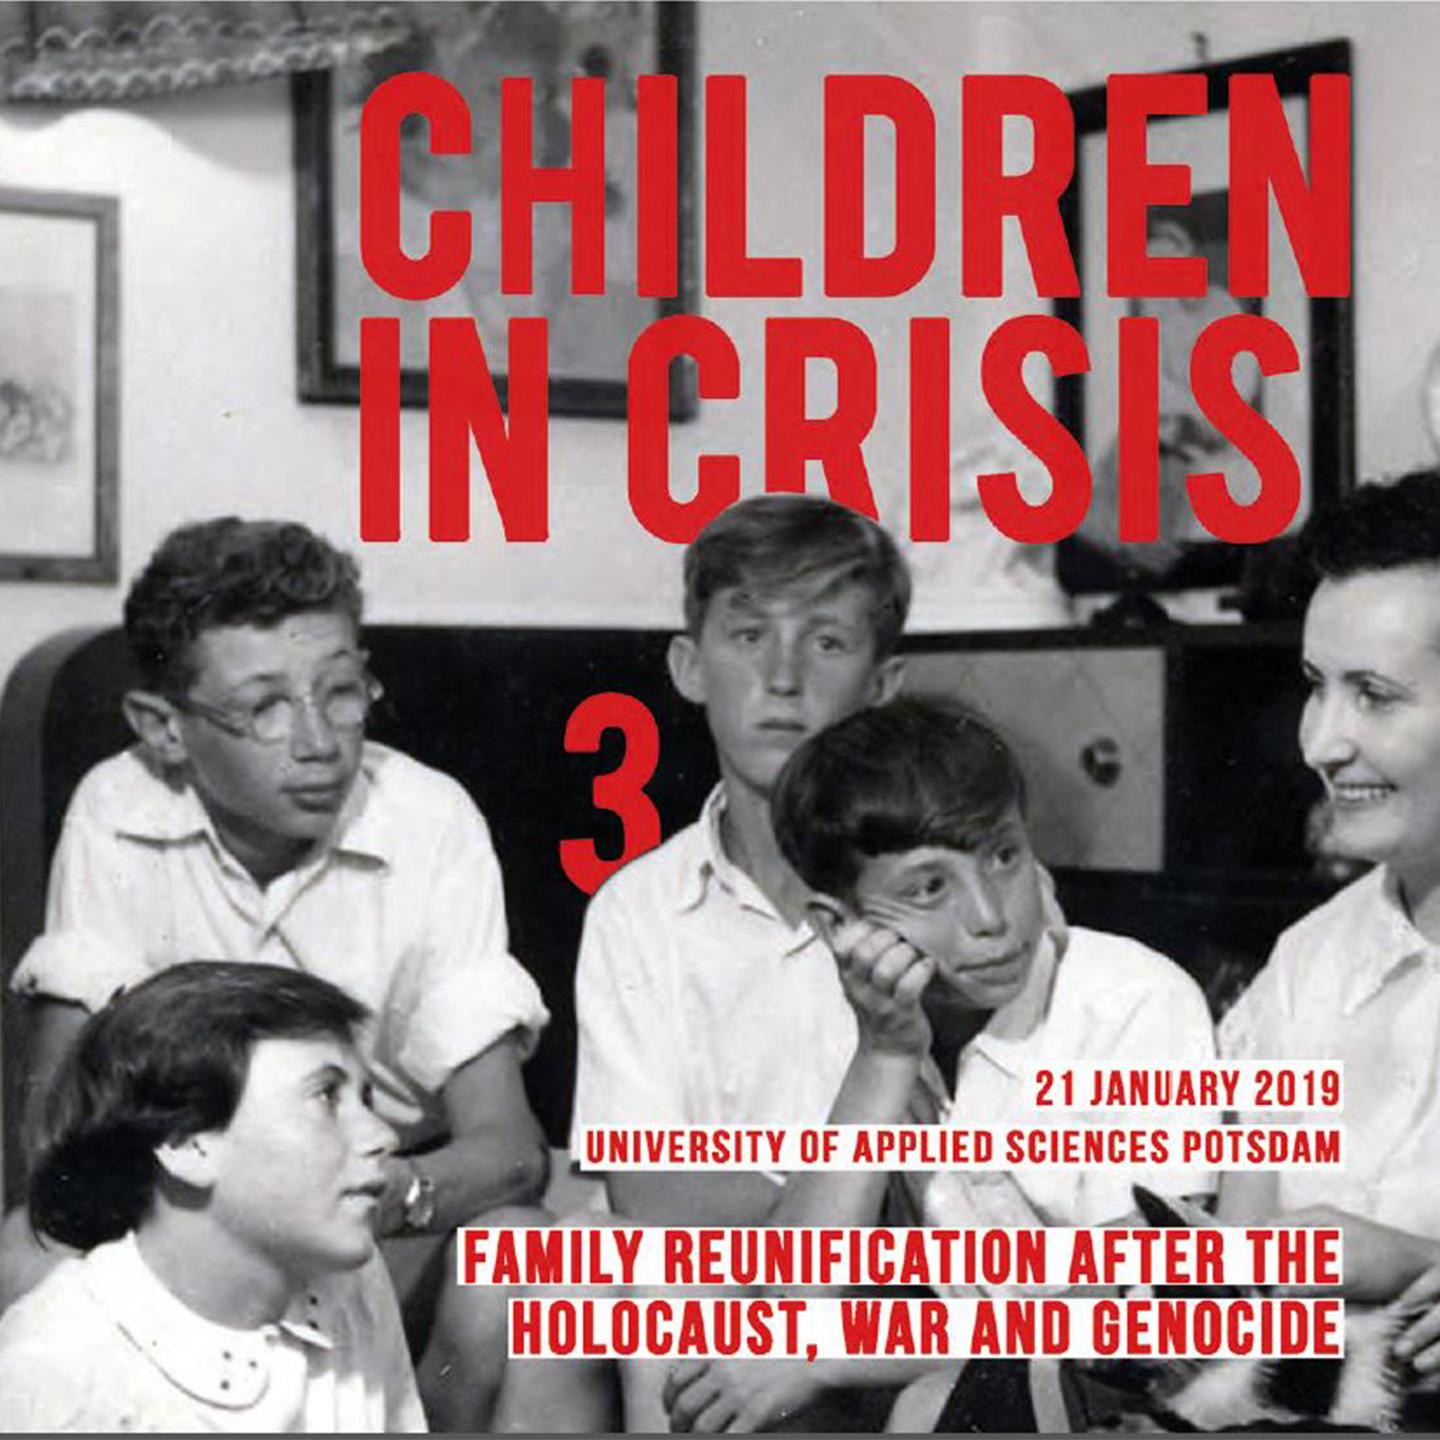 Schwarz-Weiß-Bild von mehreren Kindern, die zusammensitzen. Darauf in rot die Schrift "Children in Crisis".